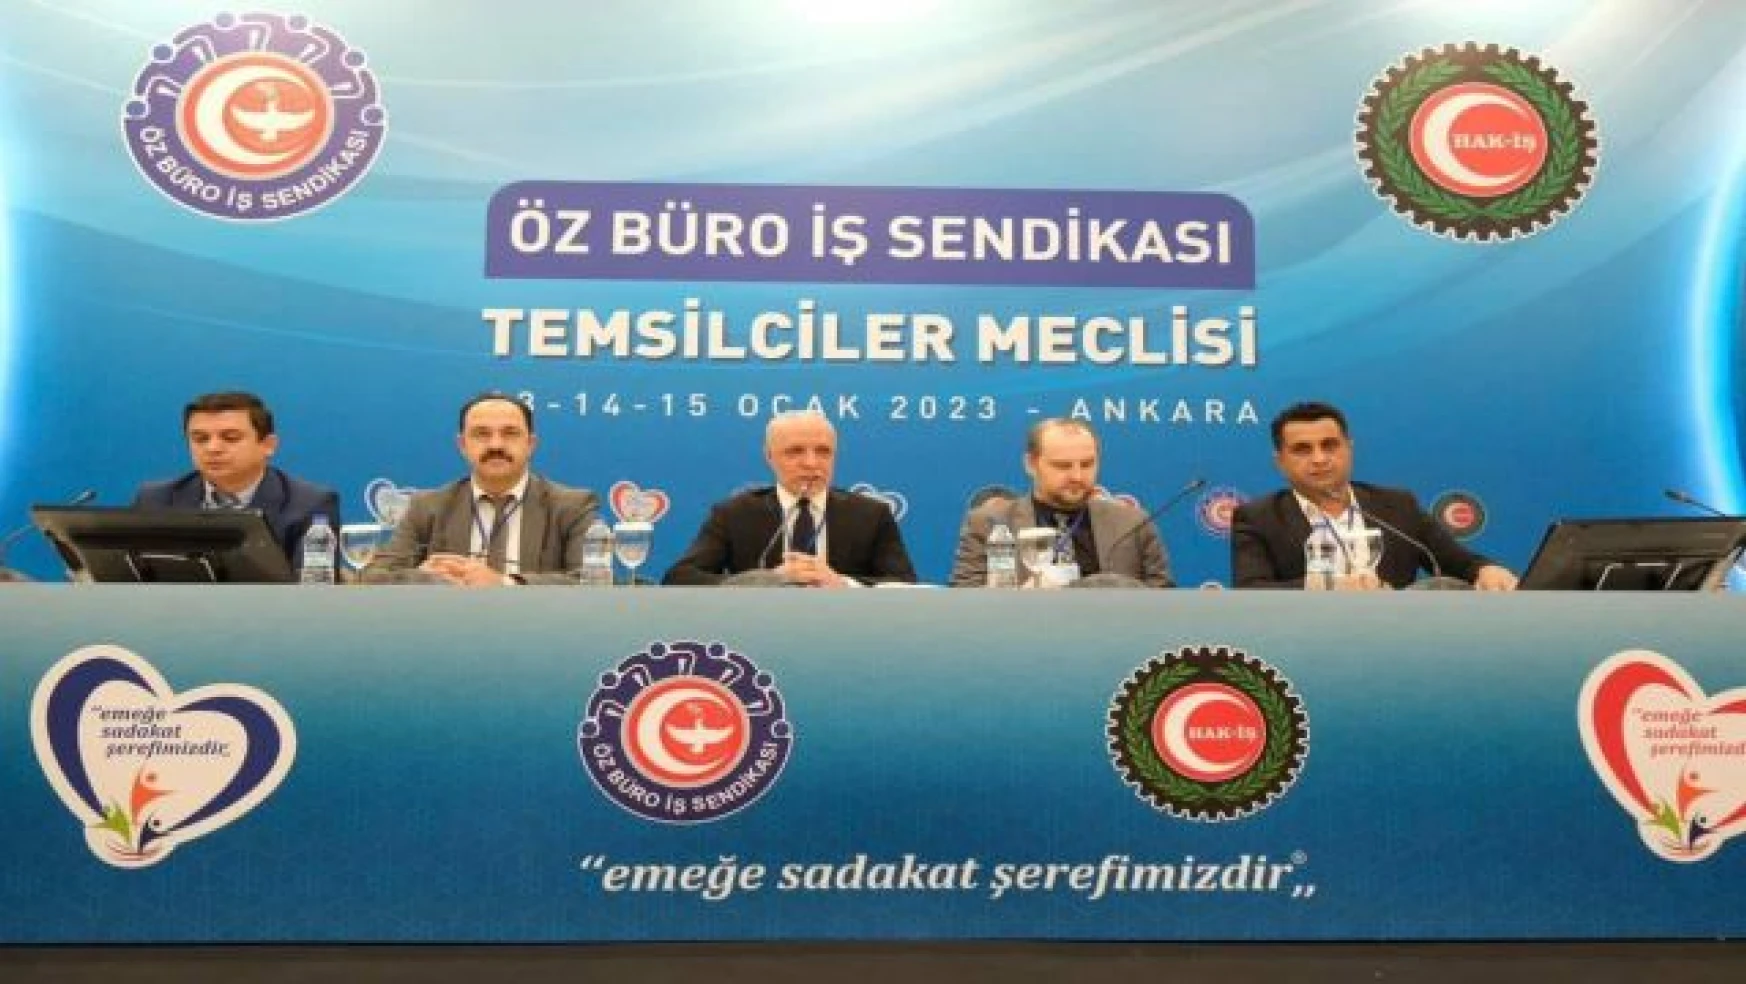 Öz Büro İş Sendikası Temsilciler toplantısı Ankara'da yapıldı